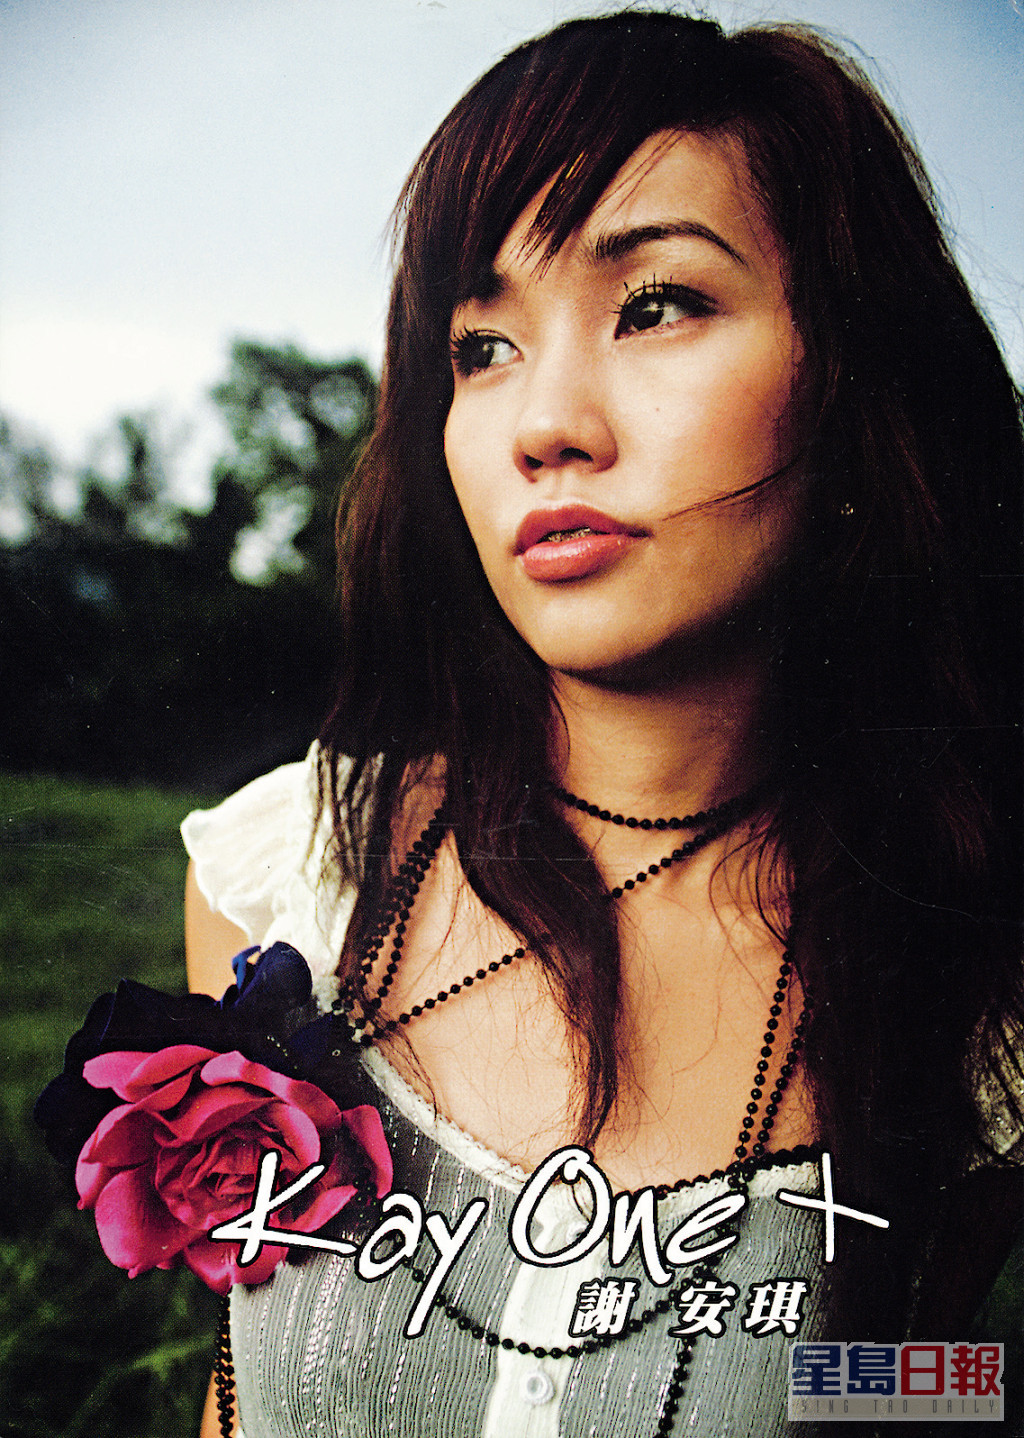 謝安琪2005年推出收張大碟《Kay One》出道。